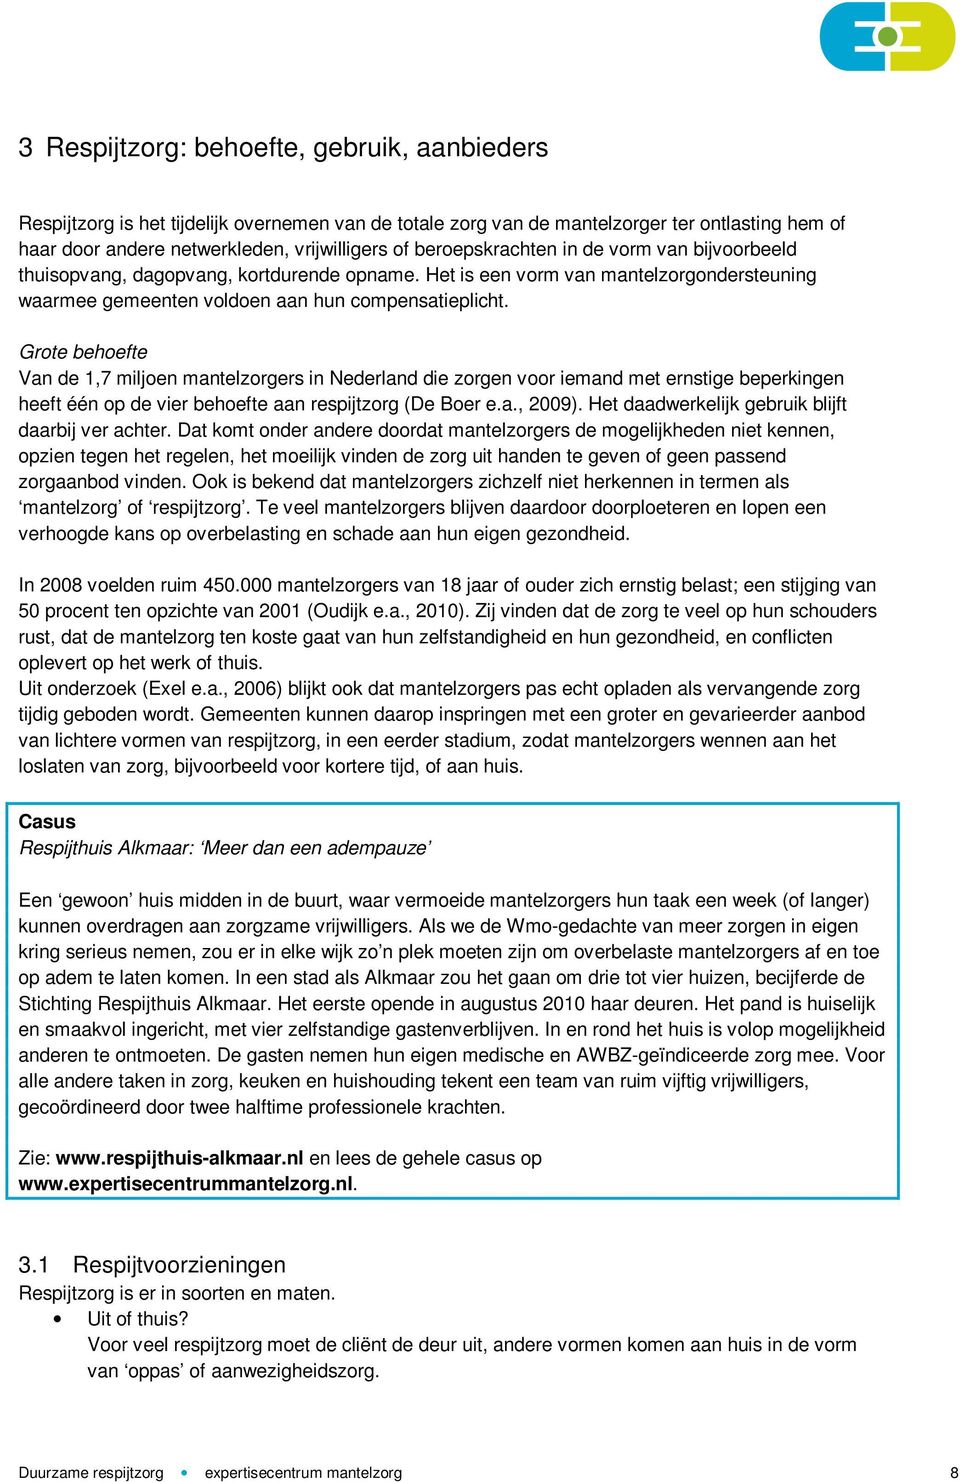 Grote behoefte Van de 1,7 miljoen mantelzorgers in Nederland die zorgen voor iemand met ernstige beperkingen heeft één op de vier behoefte aan respijtzorg (De Boer e.a., 2009).